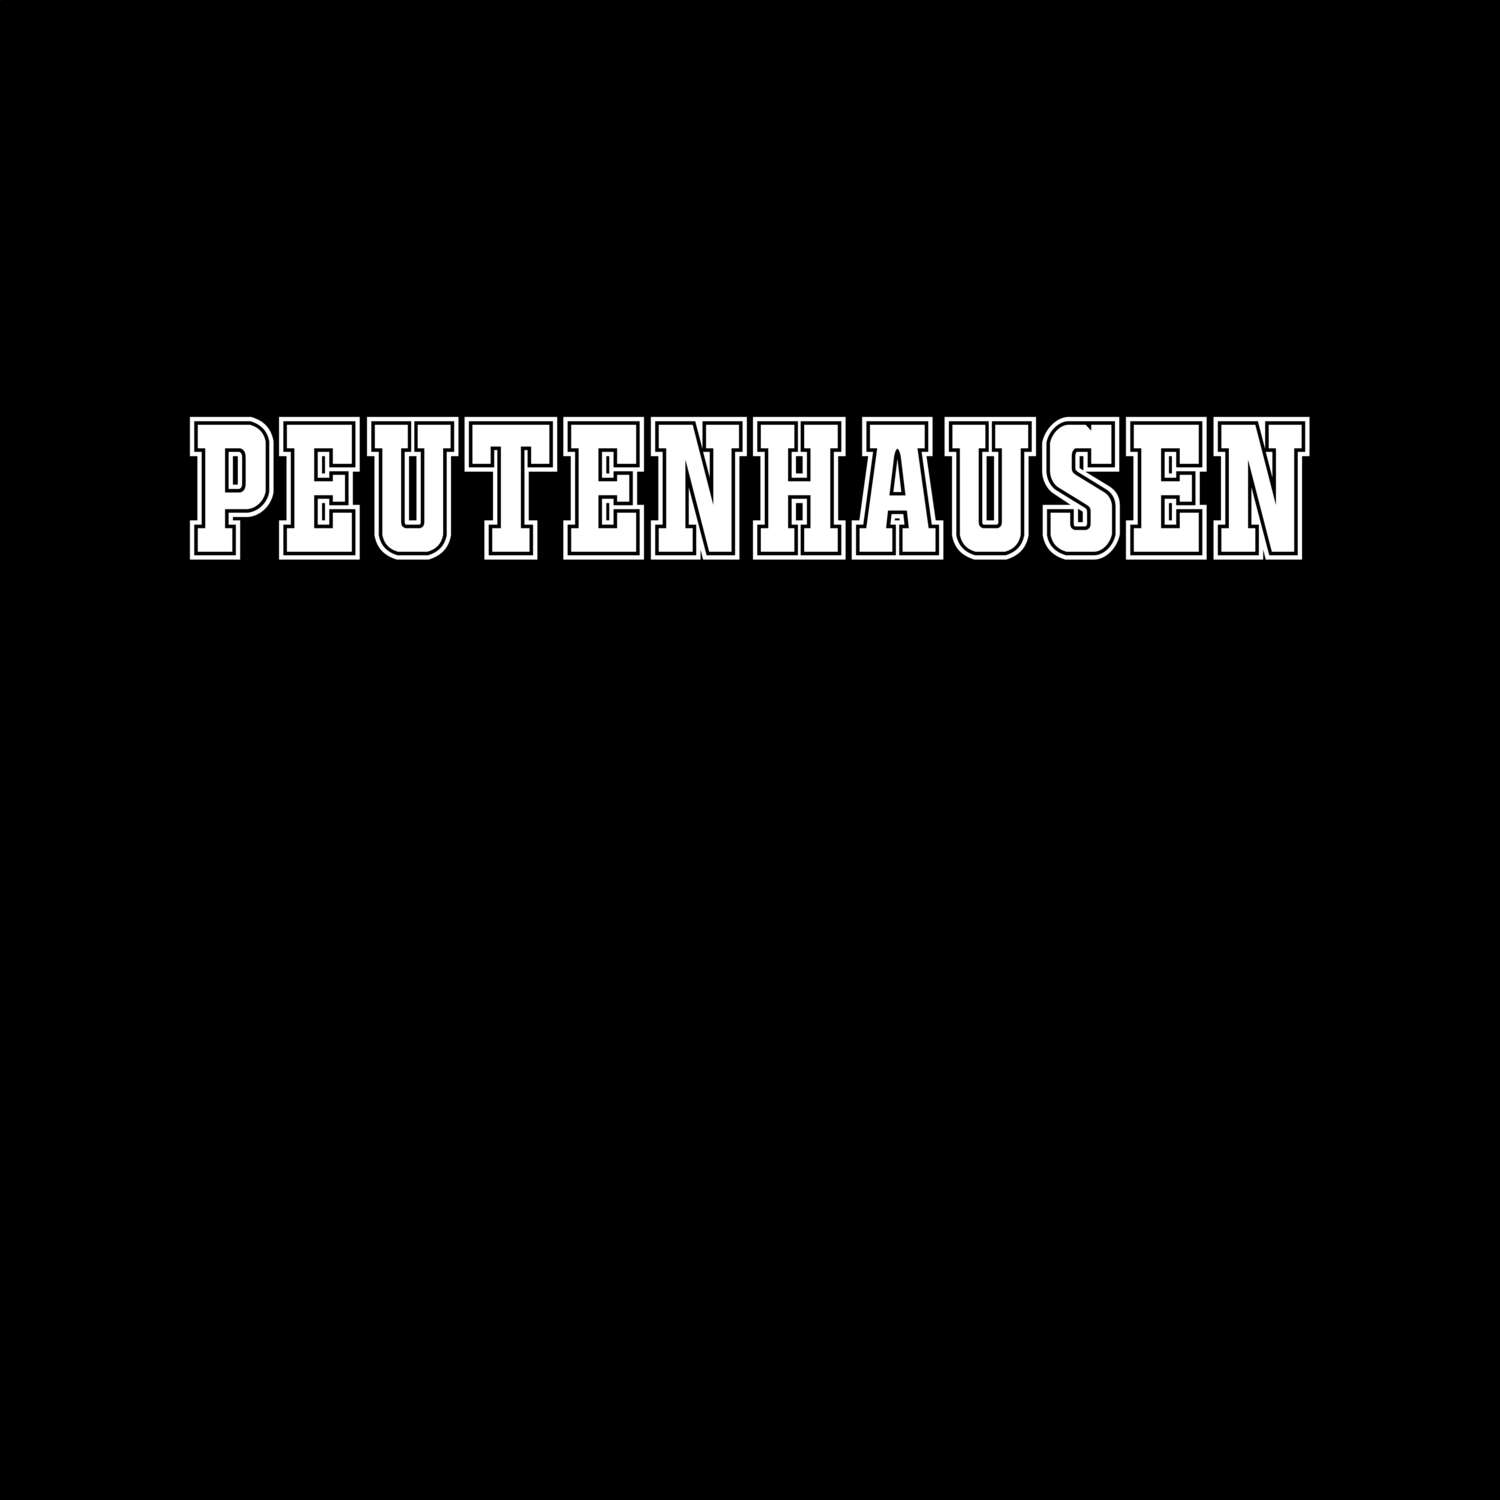 Peutenhausen T-Shirt »Classic«